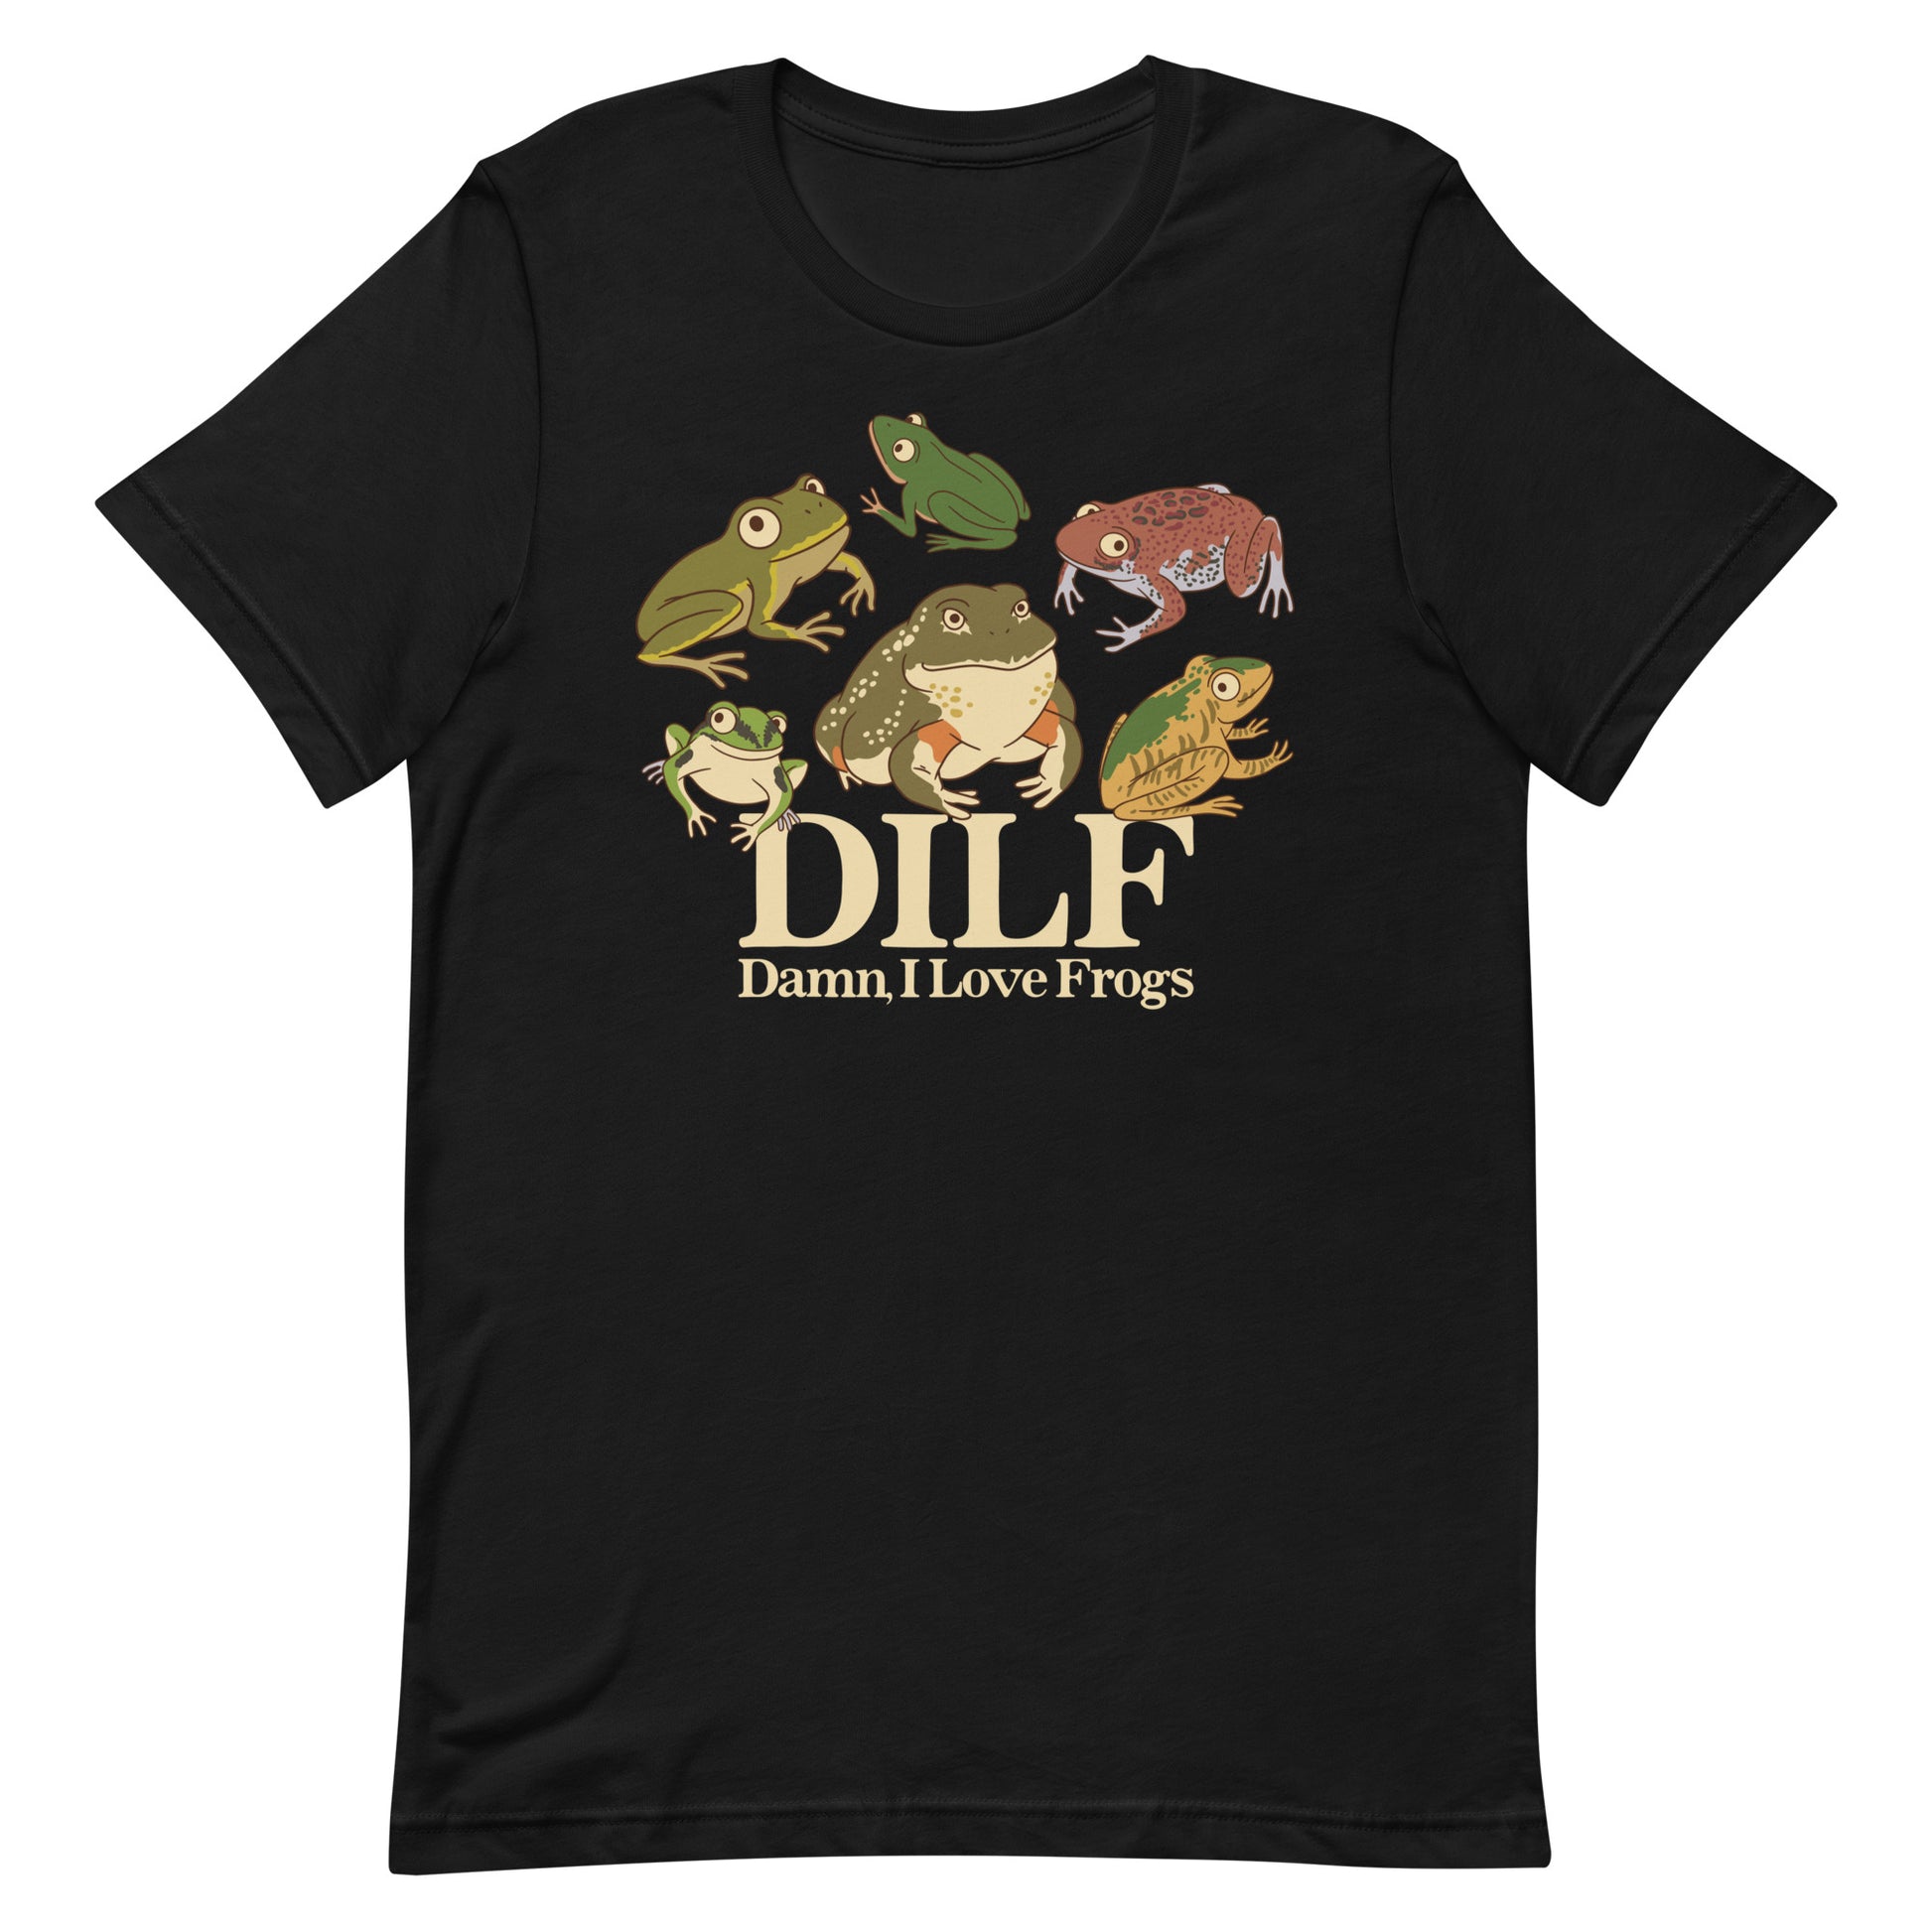 DILF (Damn, I Love Frogs) Unisex t-shirt – Got Funny?